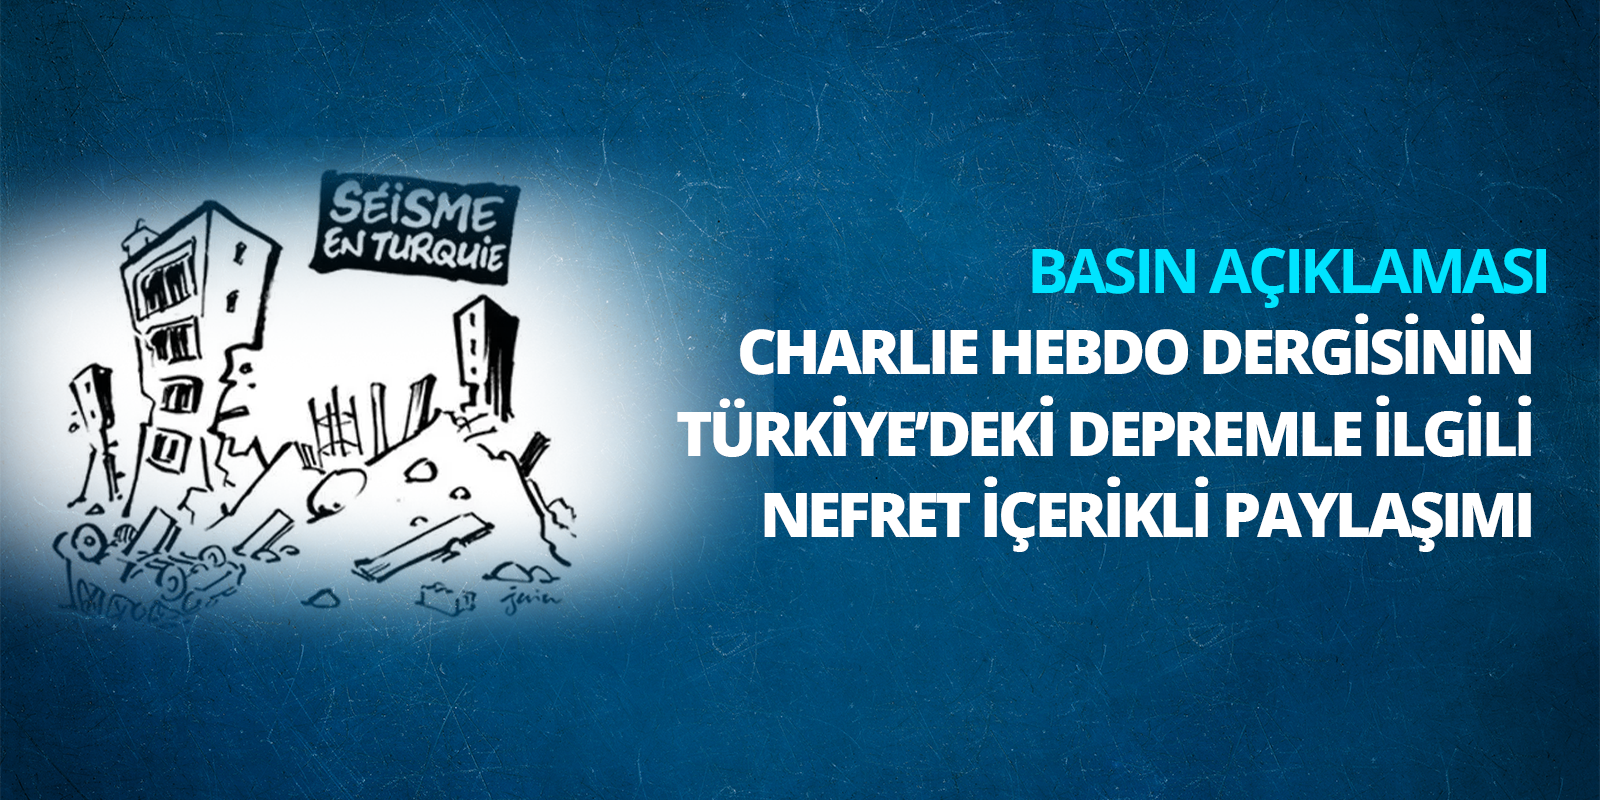 Charlie Hebdo Dergisinin Türkiye'deki Depremle İlgili Nefret İçerikli Paylaşımı Hakkında Basın Açıklaması